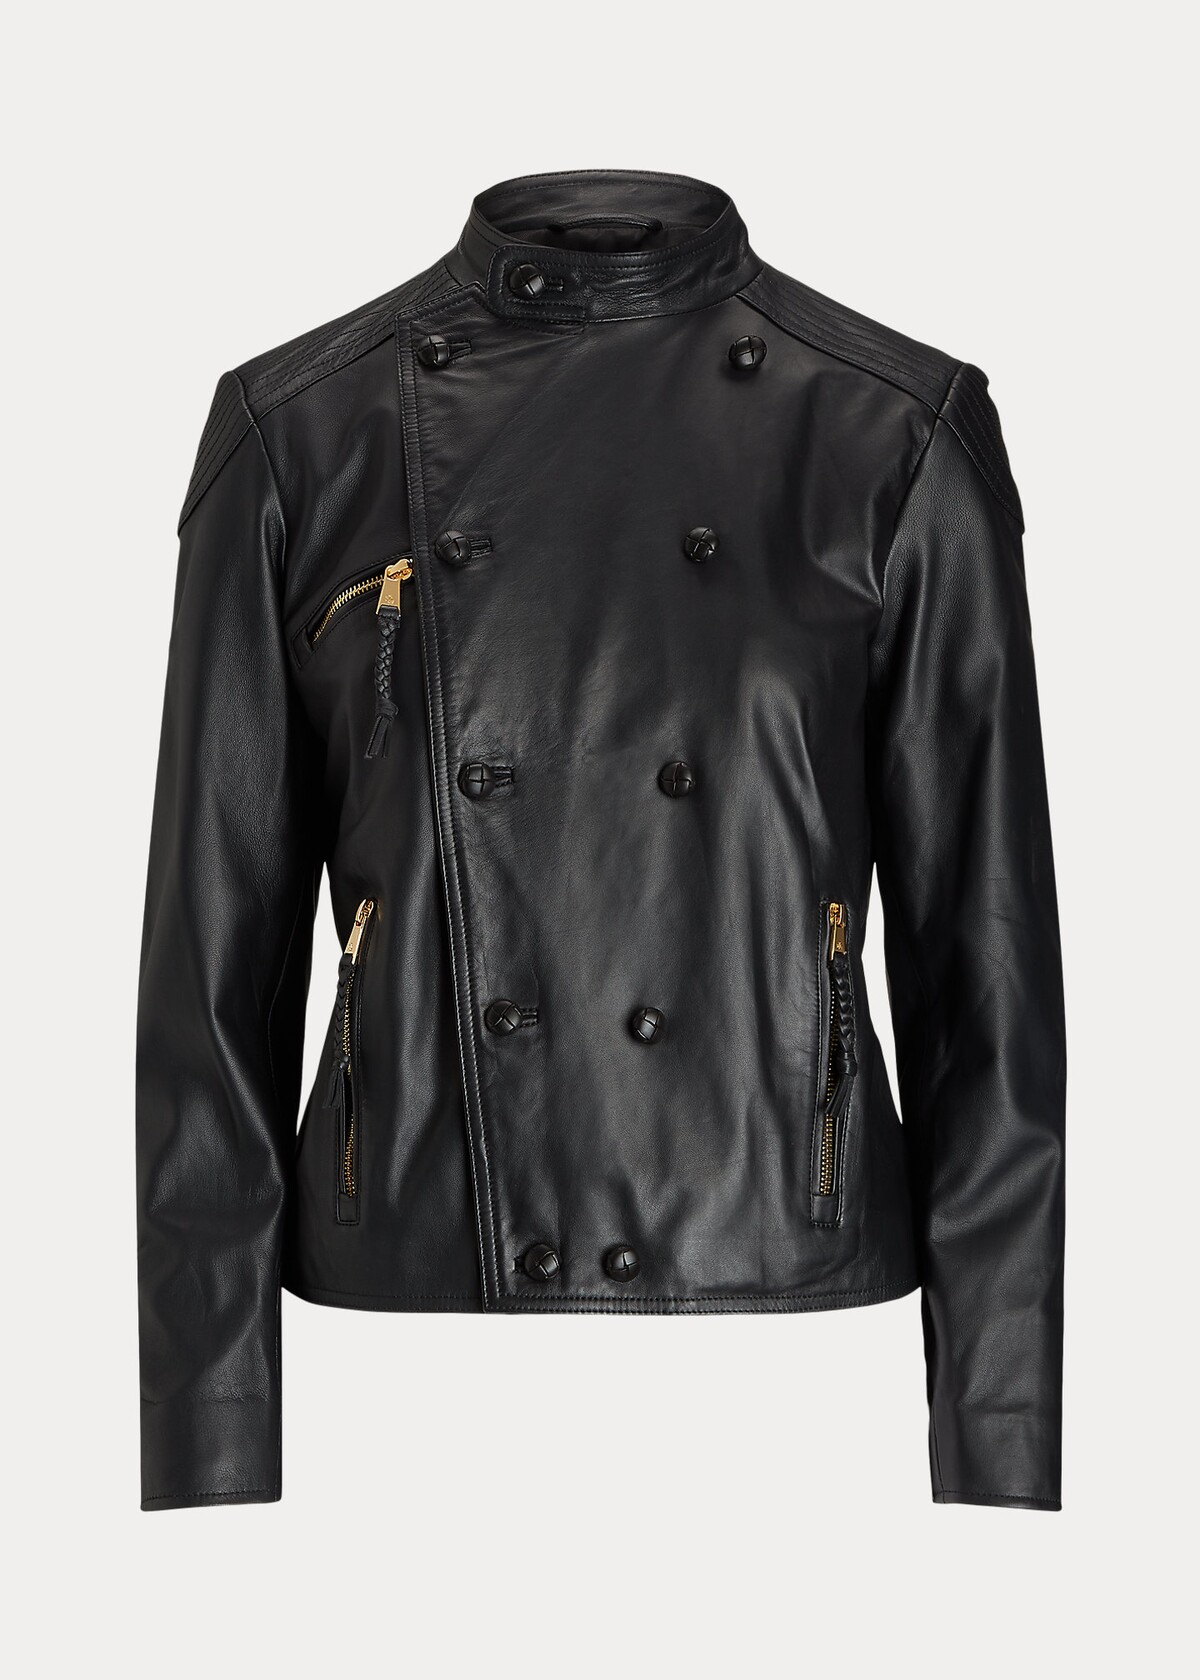 Čierna kožená motorkárska bunda značky Ralph Lauren bude v hodnote 699 € tvojím investičným odevom v šatníku. Je navrhnutá s dvojradovou siluetou a páskovým golierom. Vďaka viditeľným zlatým zipsom a prešívaným záplatám na pleciach a lakťoch pôsobí elegantne, no rozhodne nie nudne.
